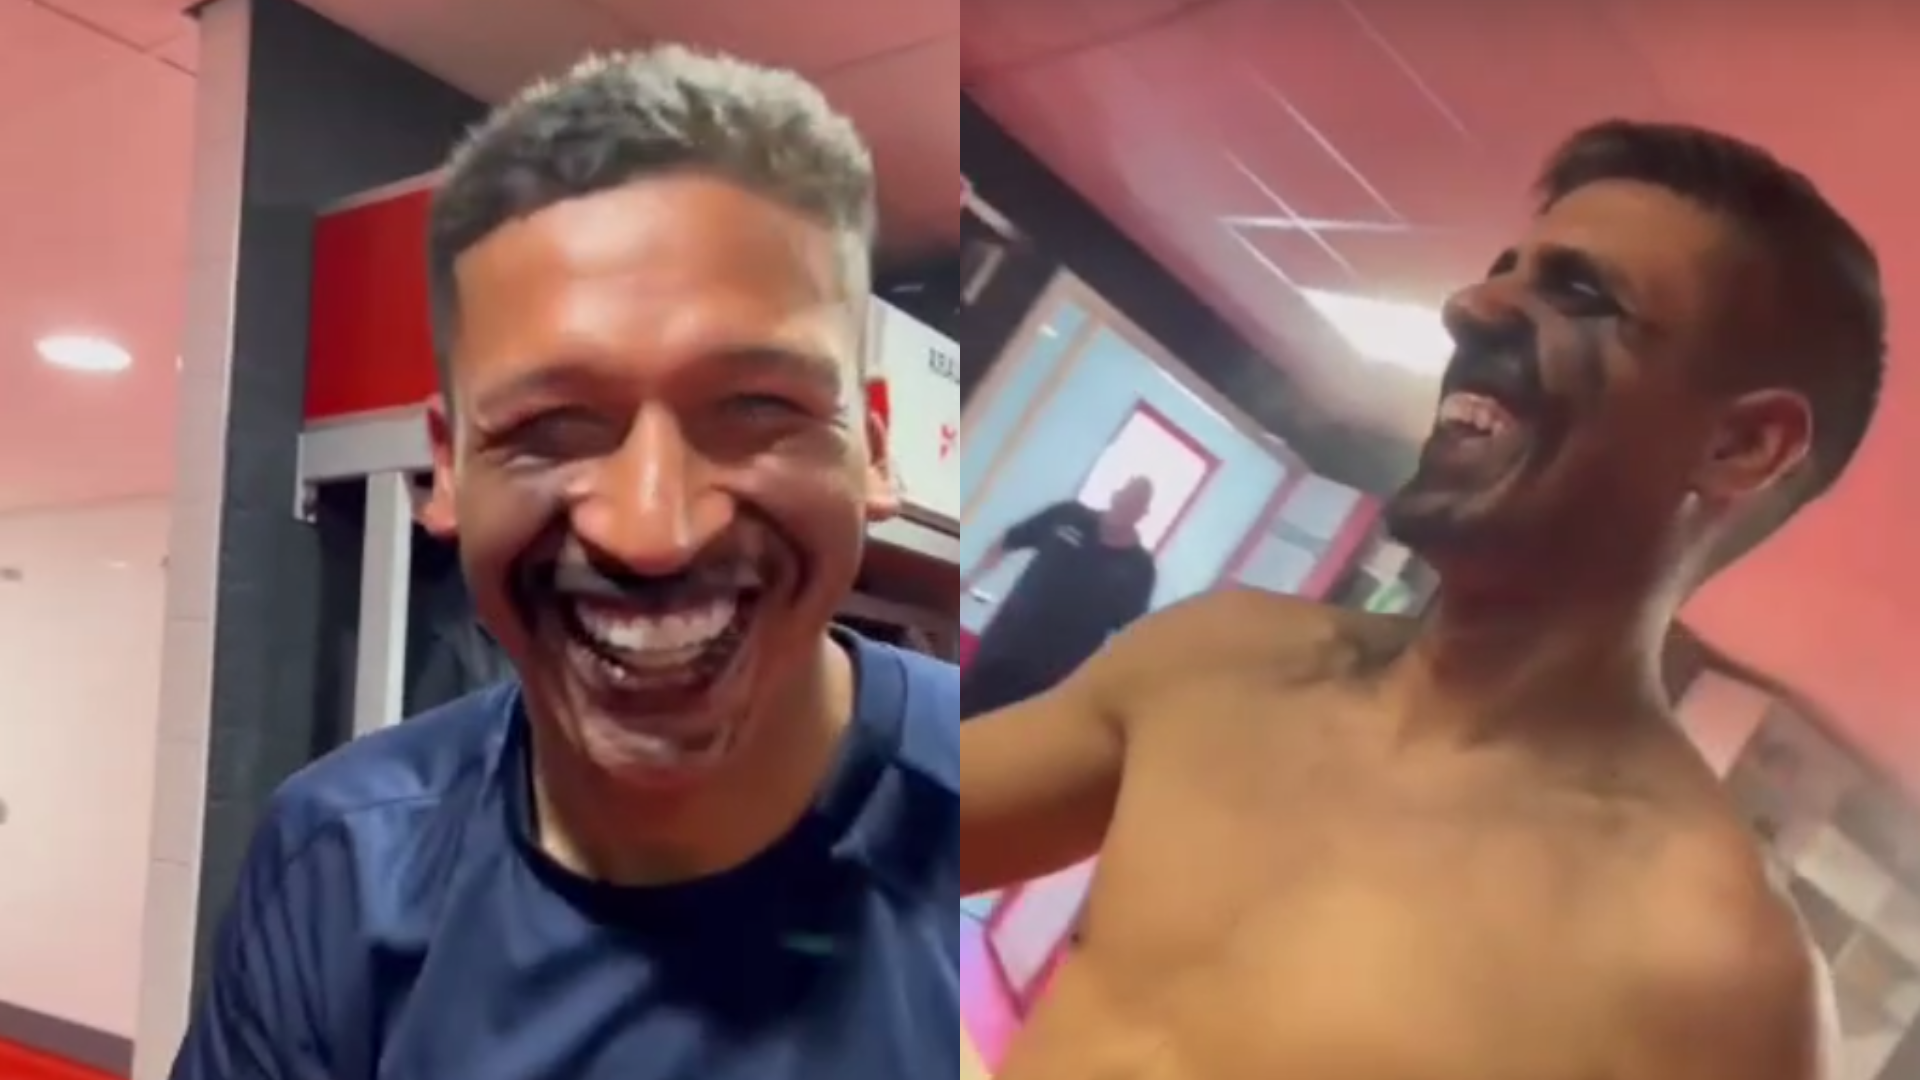 Fernando Pacheco y Gonzalo Sánchez sufrieron peculiar broma en vestuario del FC Emmen